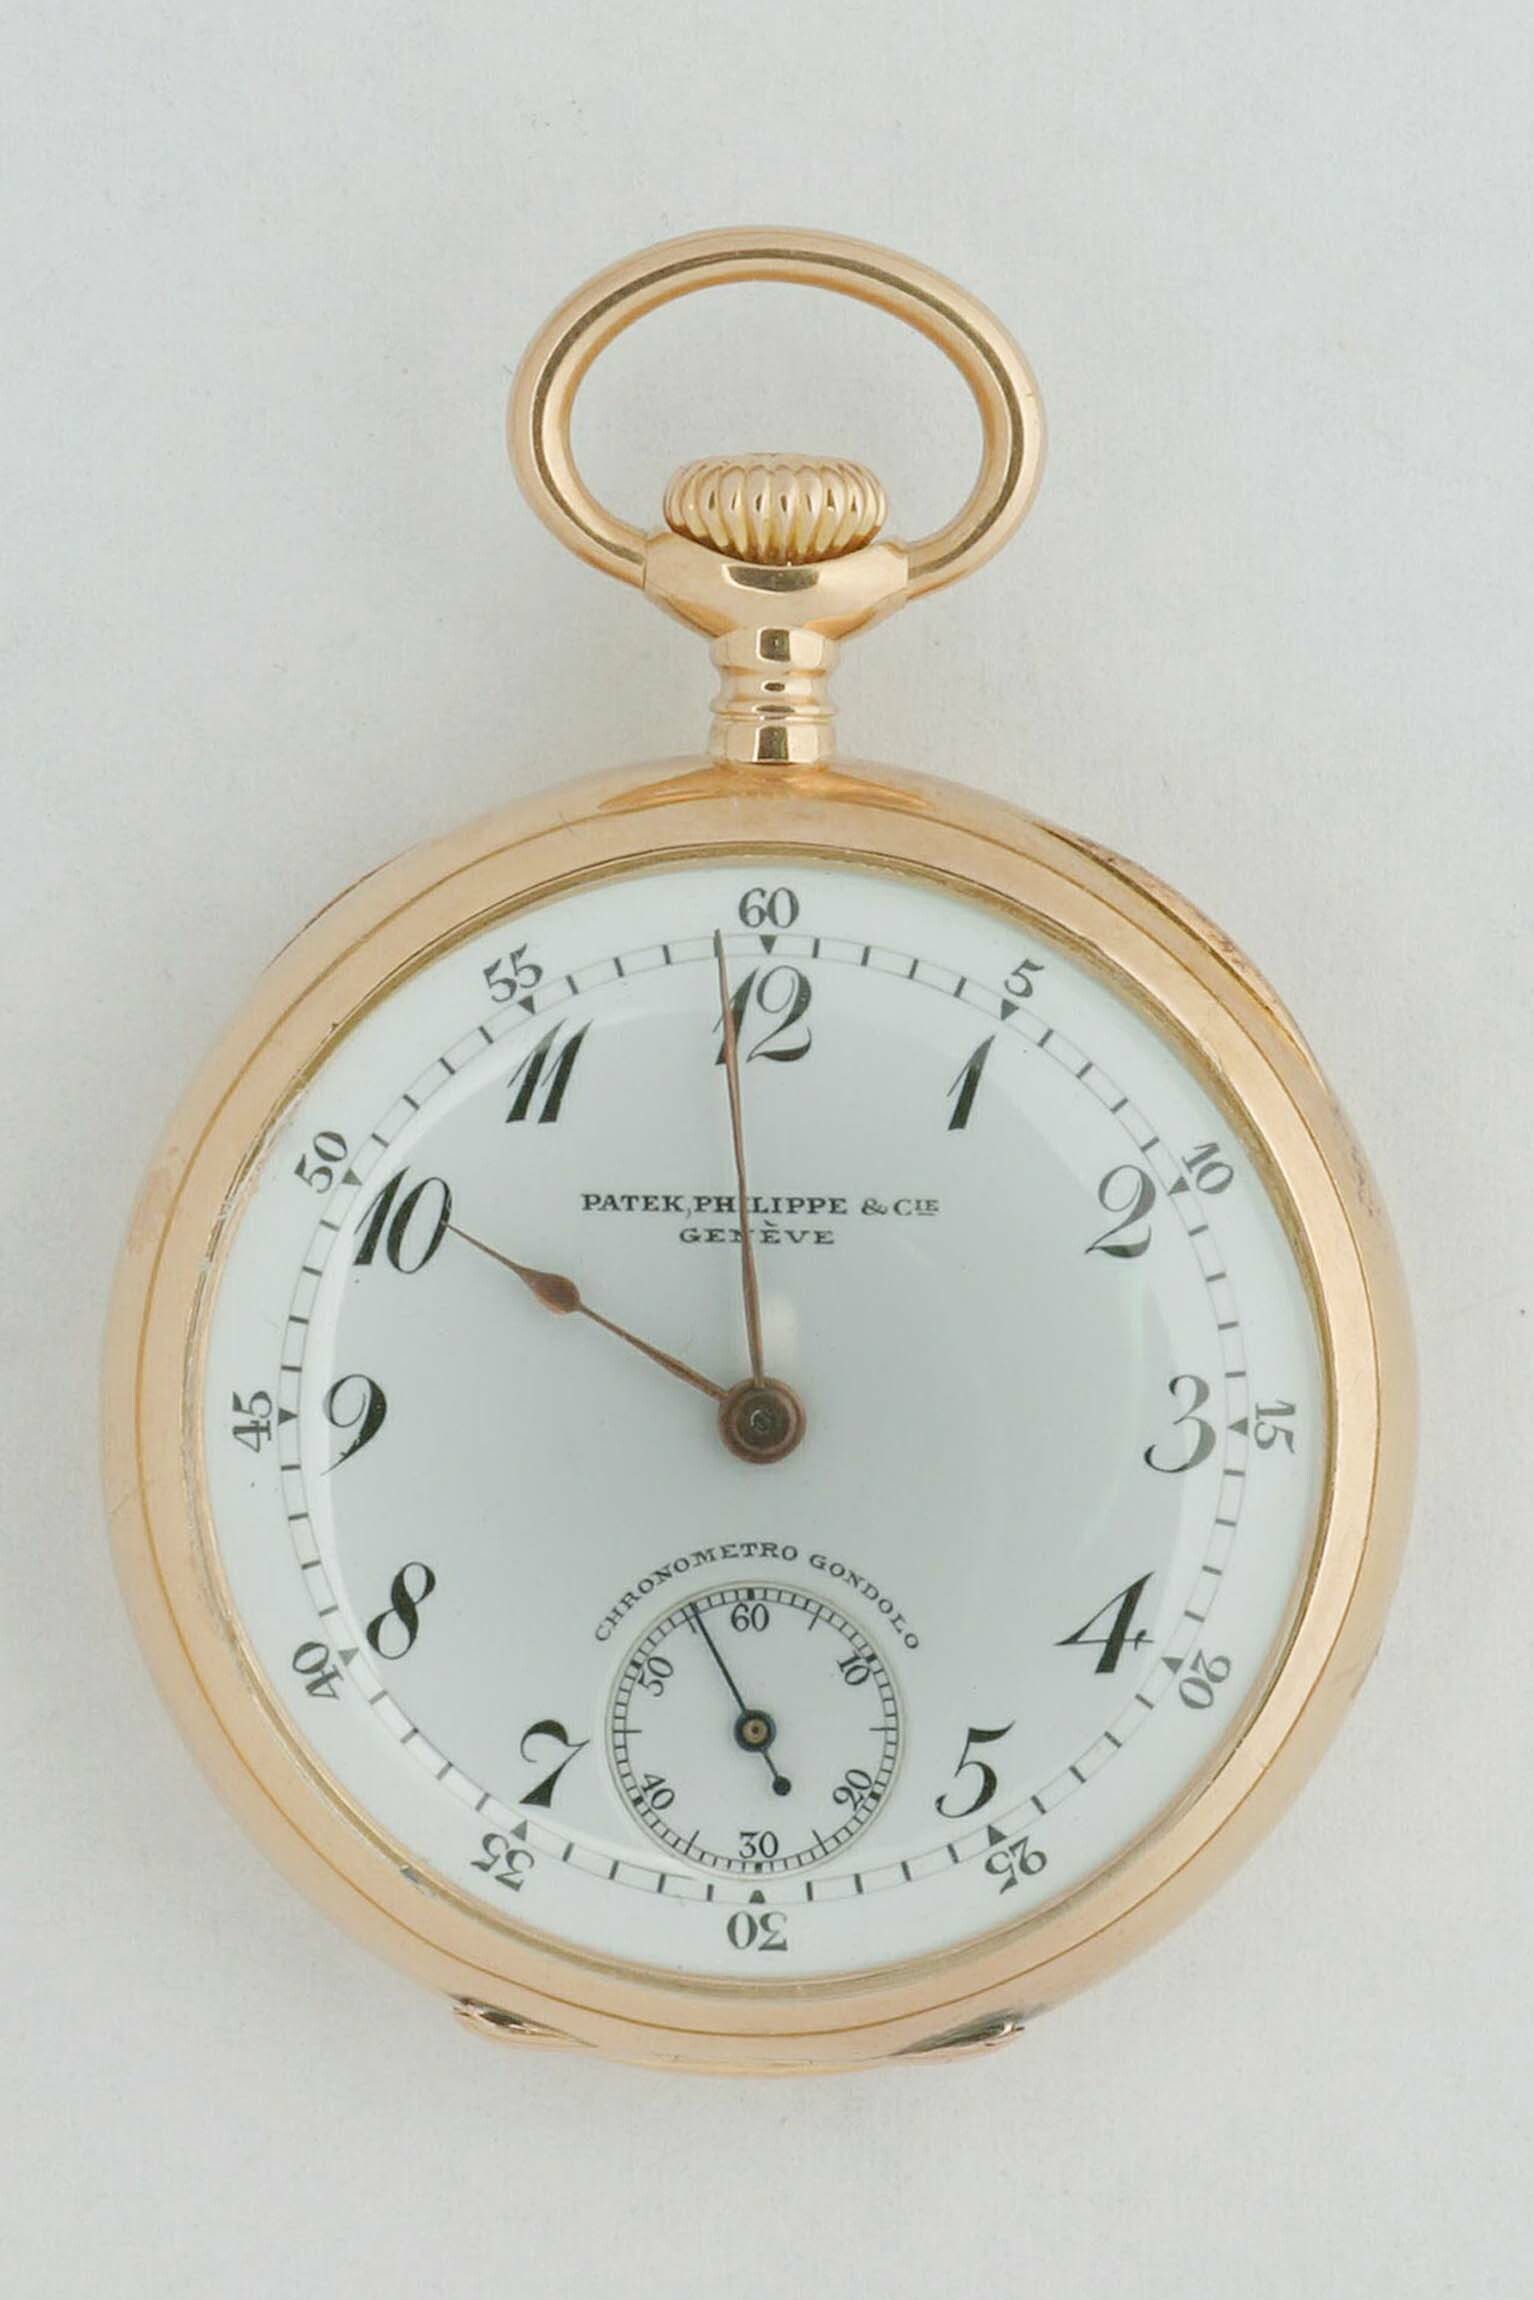 Taschenuhr, Patek Philippe, Genf, um 1910 (Deutsches Uhrenmuseum CC BY-SA)